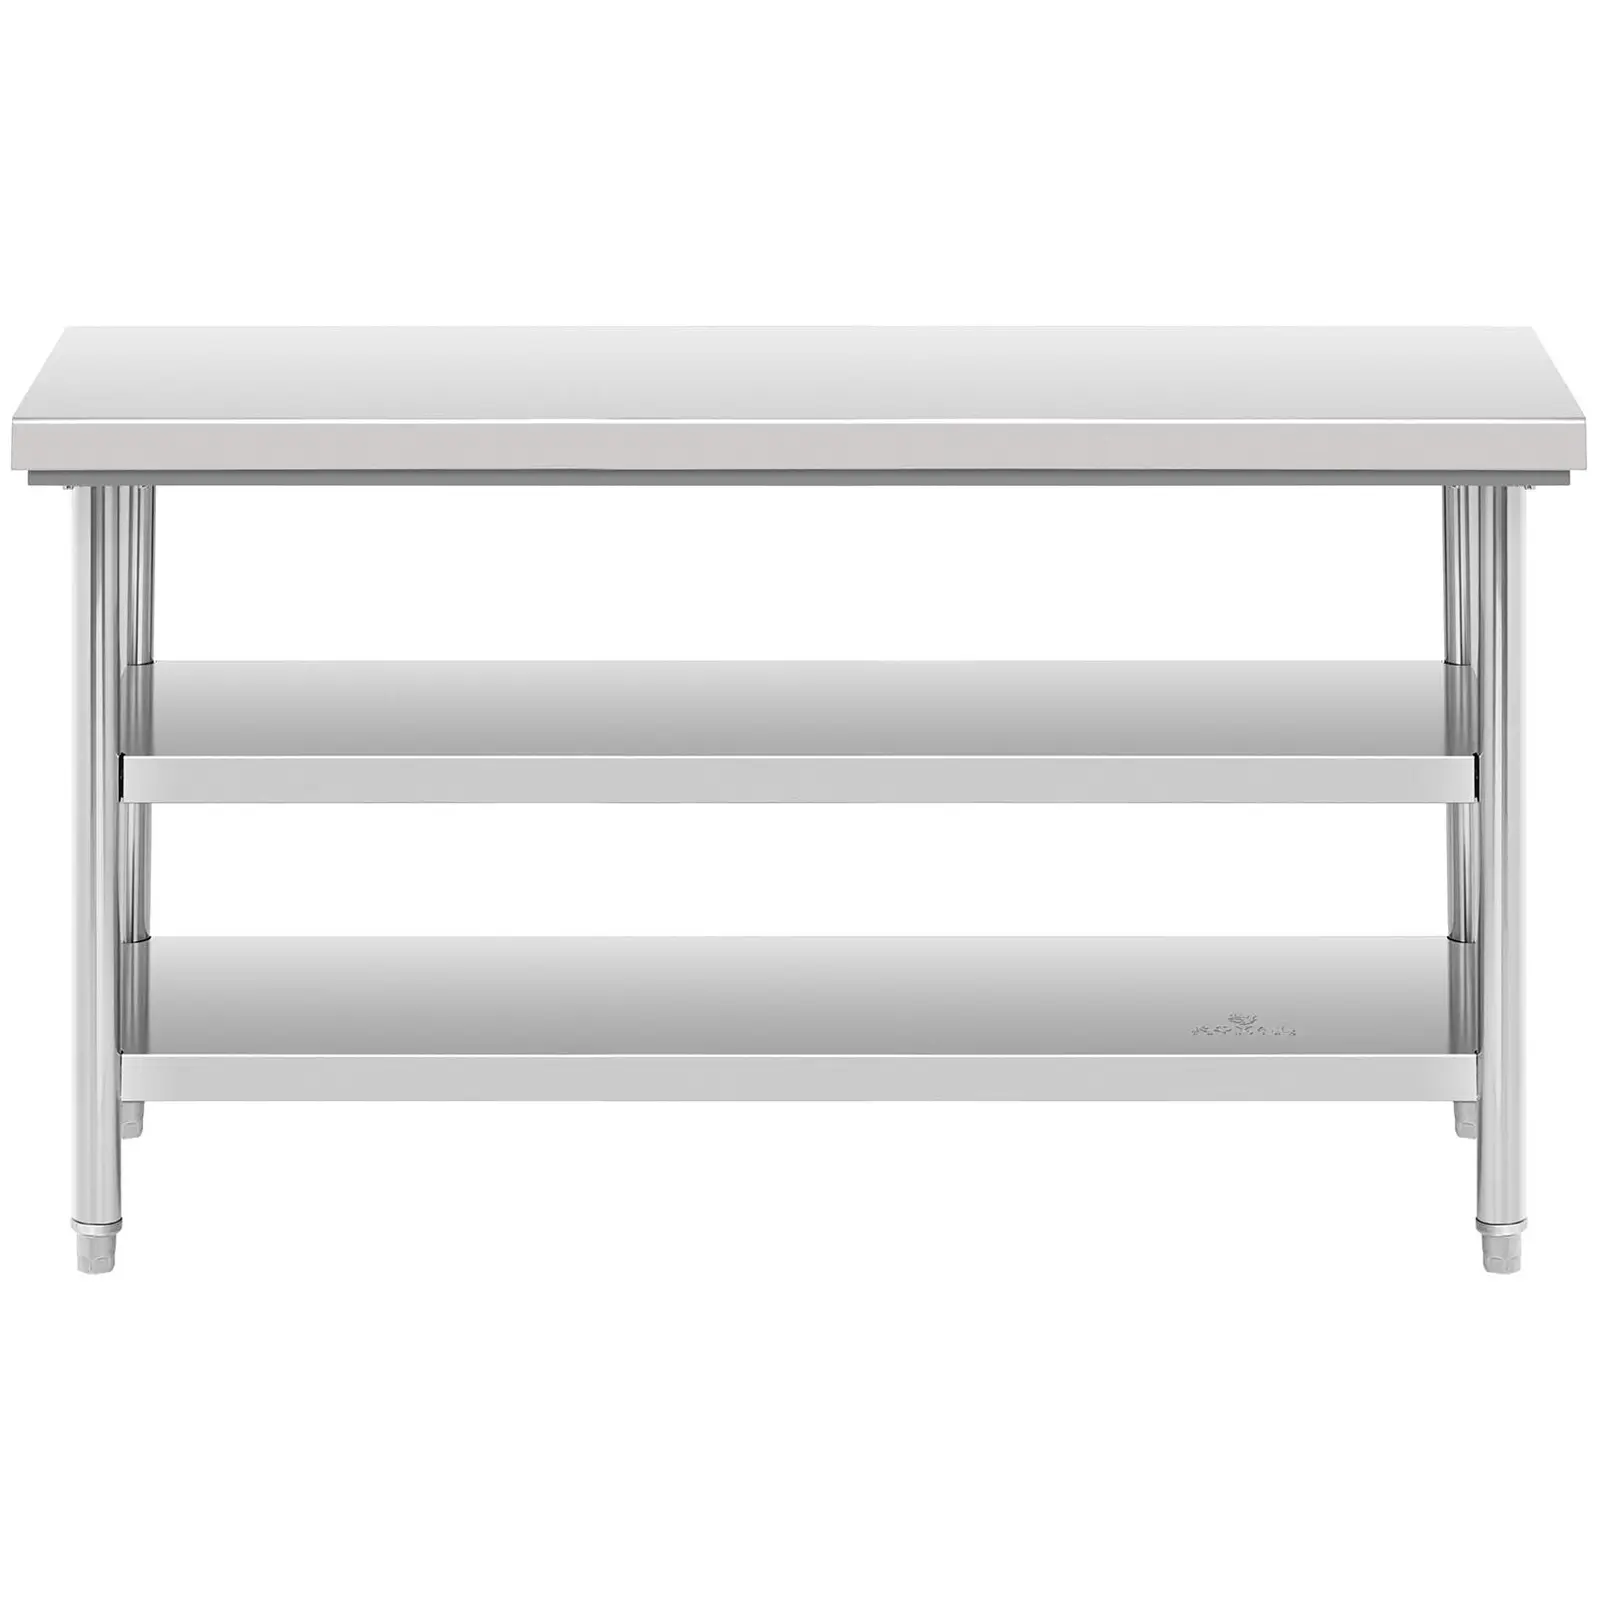 Pracovný stôl z ušľachtilej ocele - 150 x 70 cm - nosnosť 600 kg - 3 úrovne